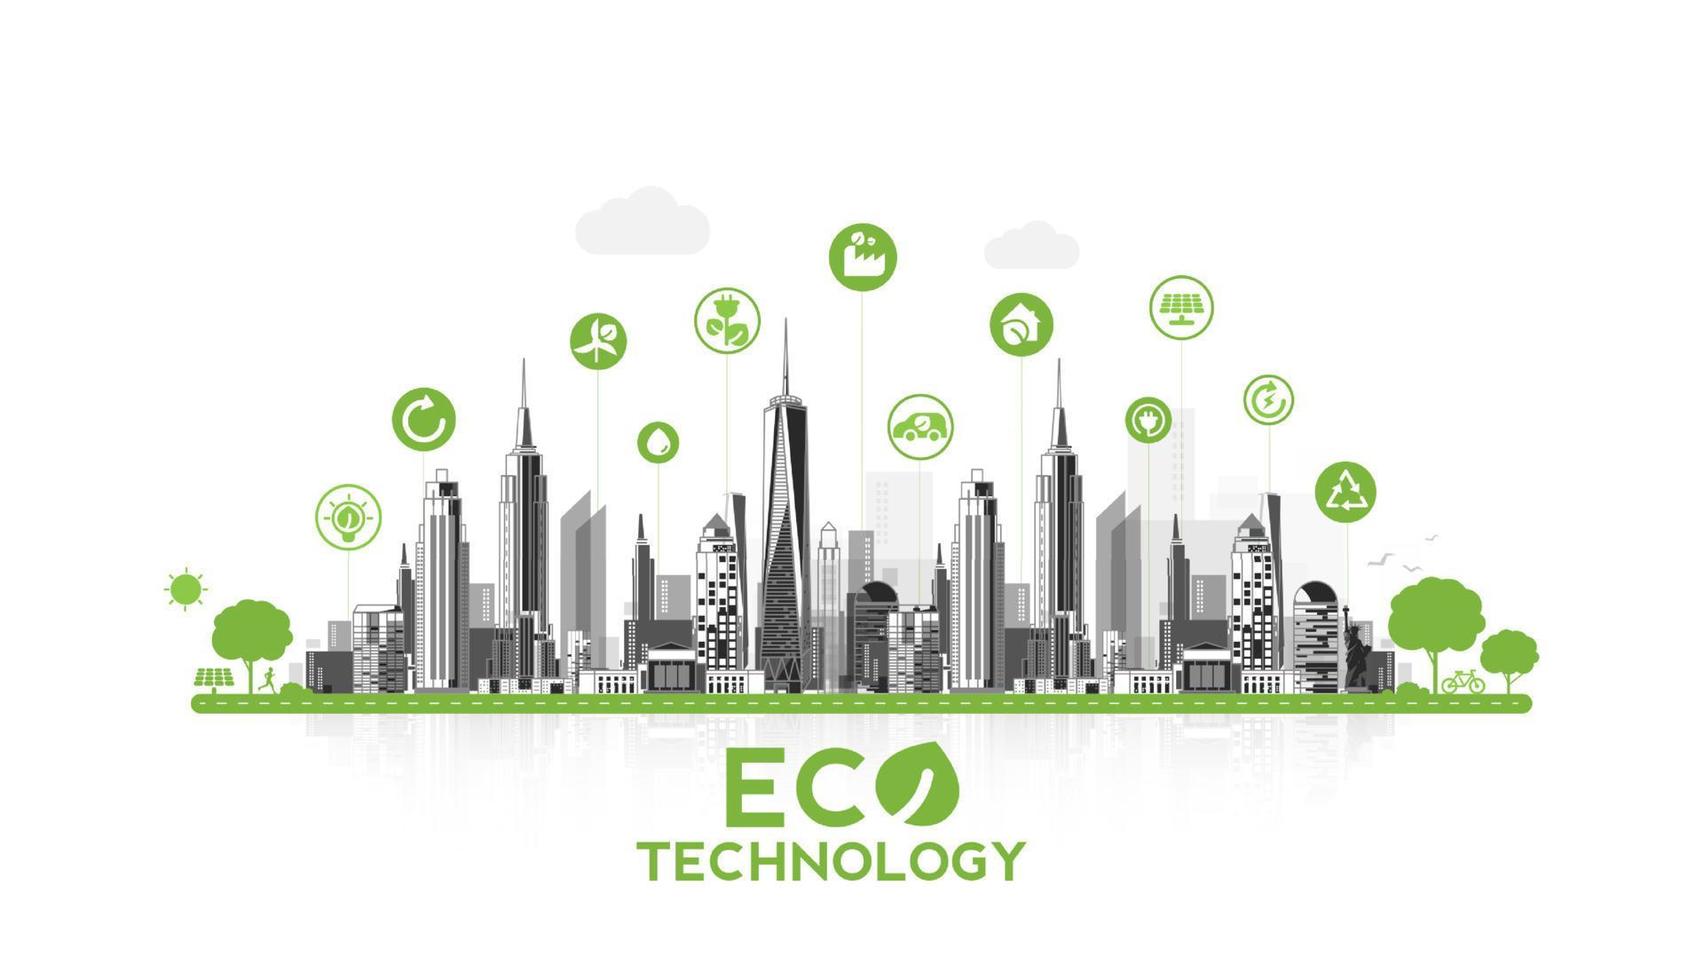 technologie écologique ou concept environnemental ville verte moderne. mode de vie urbain respectueux de l'environnement avec des icônes sur la connexion réseau. conception de vecteur